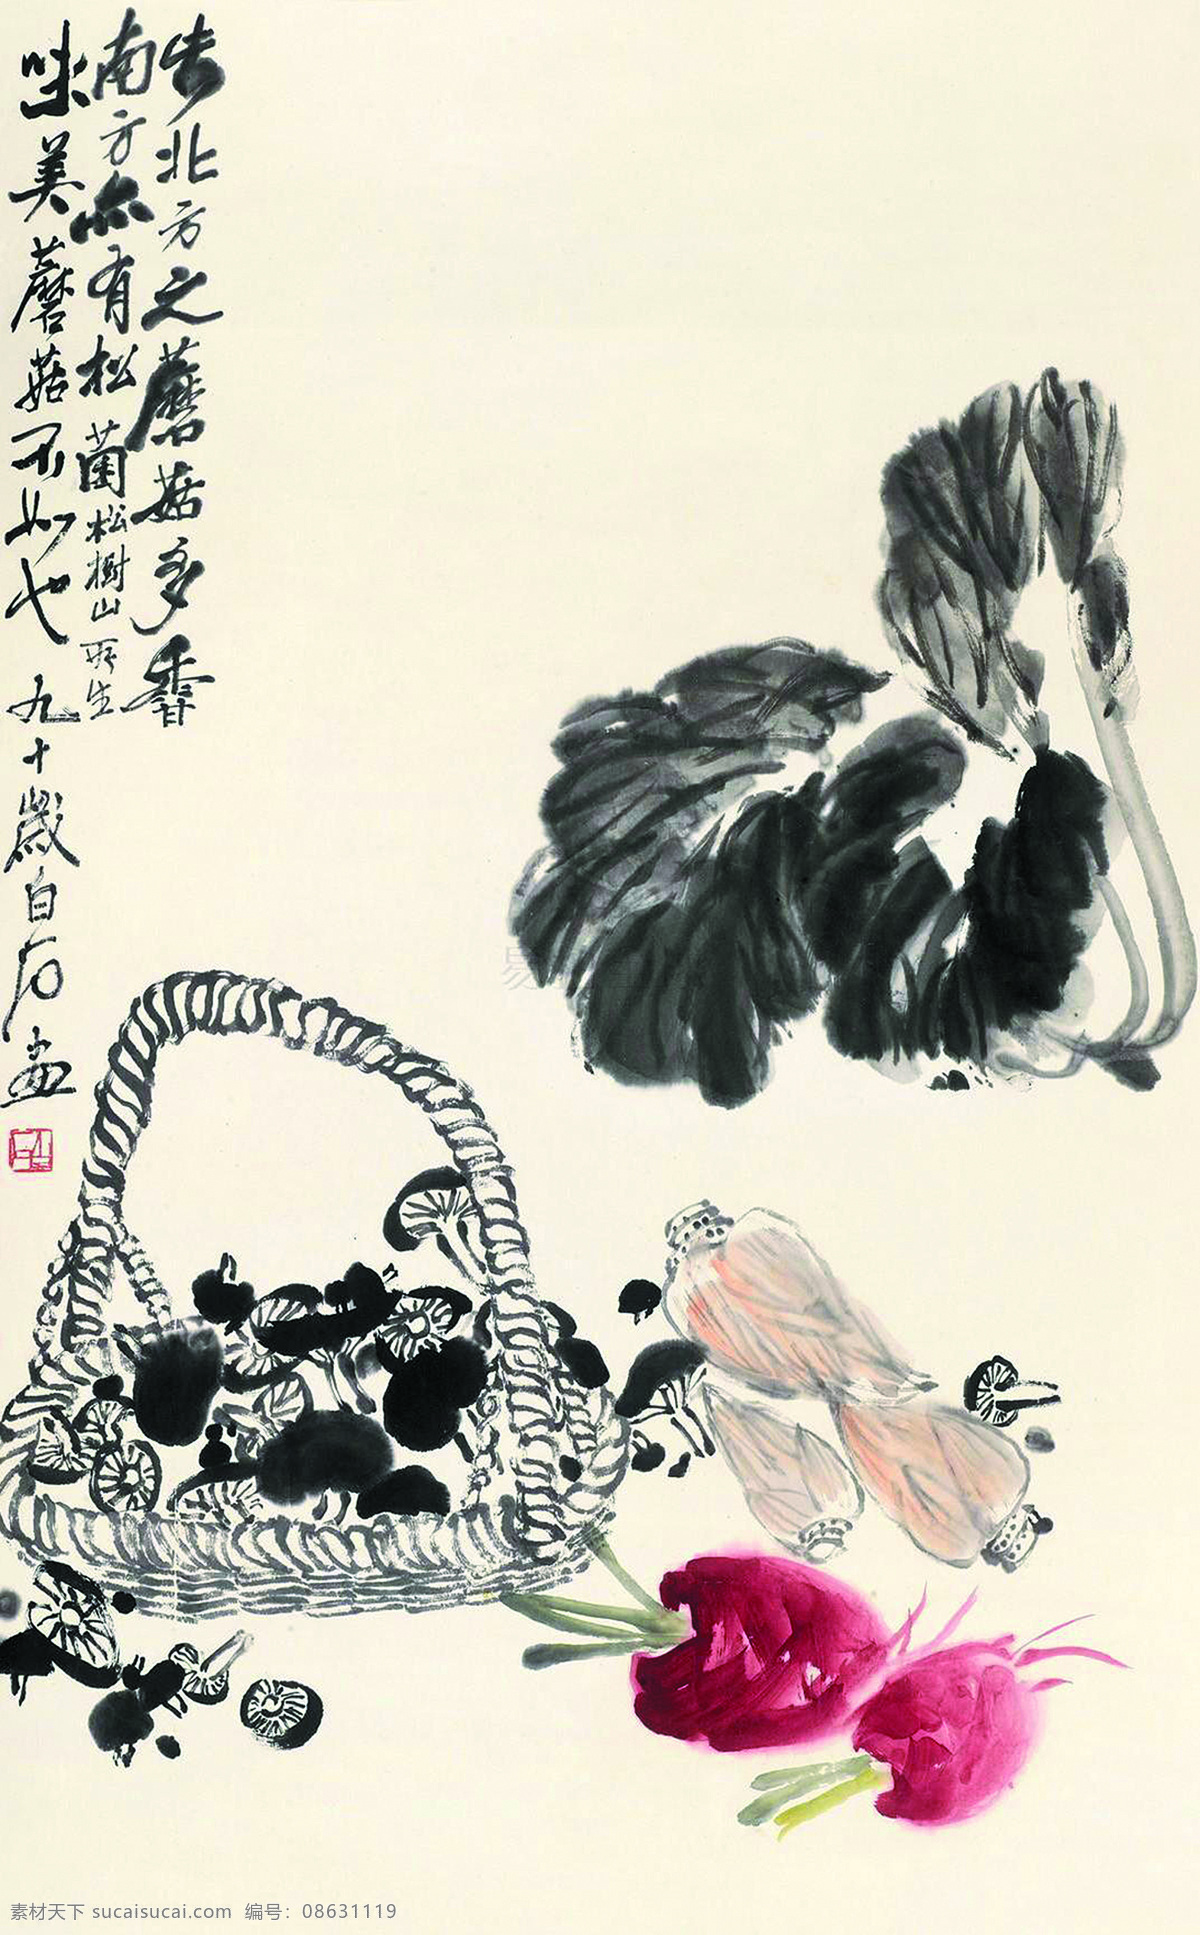 齐白石国画 美术 中国画 水墨画 白菜 红萝卜 香菇 竹笋 名家国画 文化艺术 绘画书法 白色